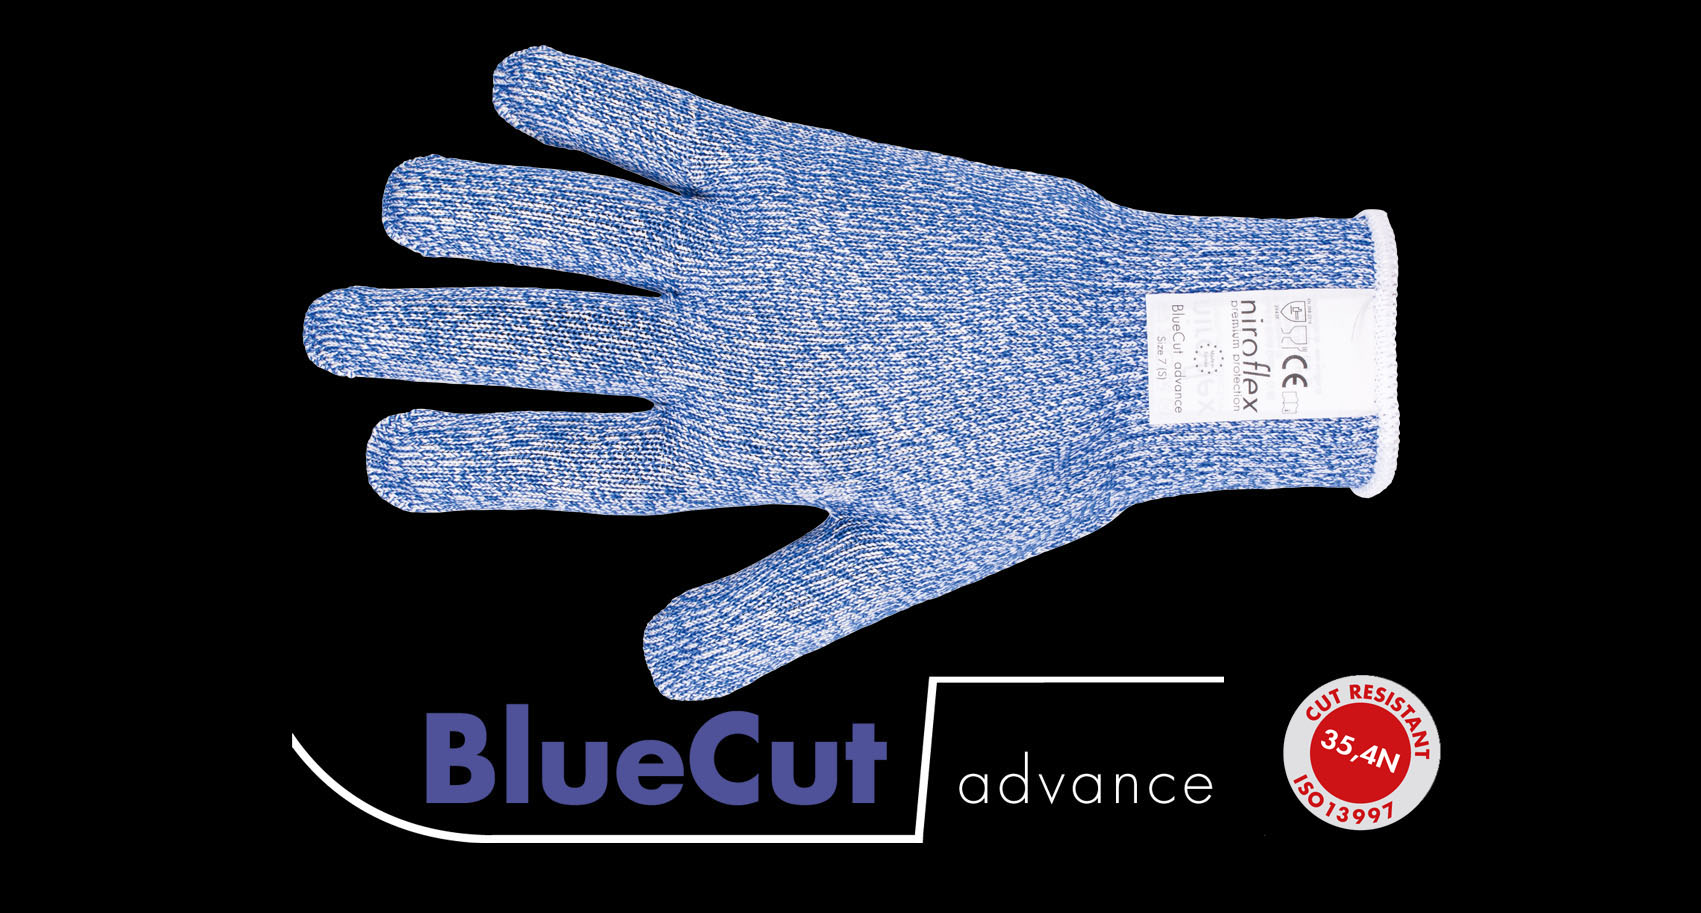 BlueCut advance, Schnittschutzhandschuh Lebensmittel, Schnittfeste Handschuhe Lebensmittel, Schnittschutz Handschuh, Schnittschutzhandschuhe Metzger, Fleischer Zubehör